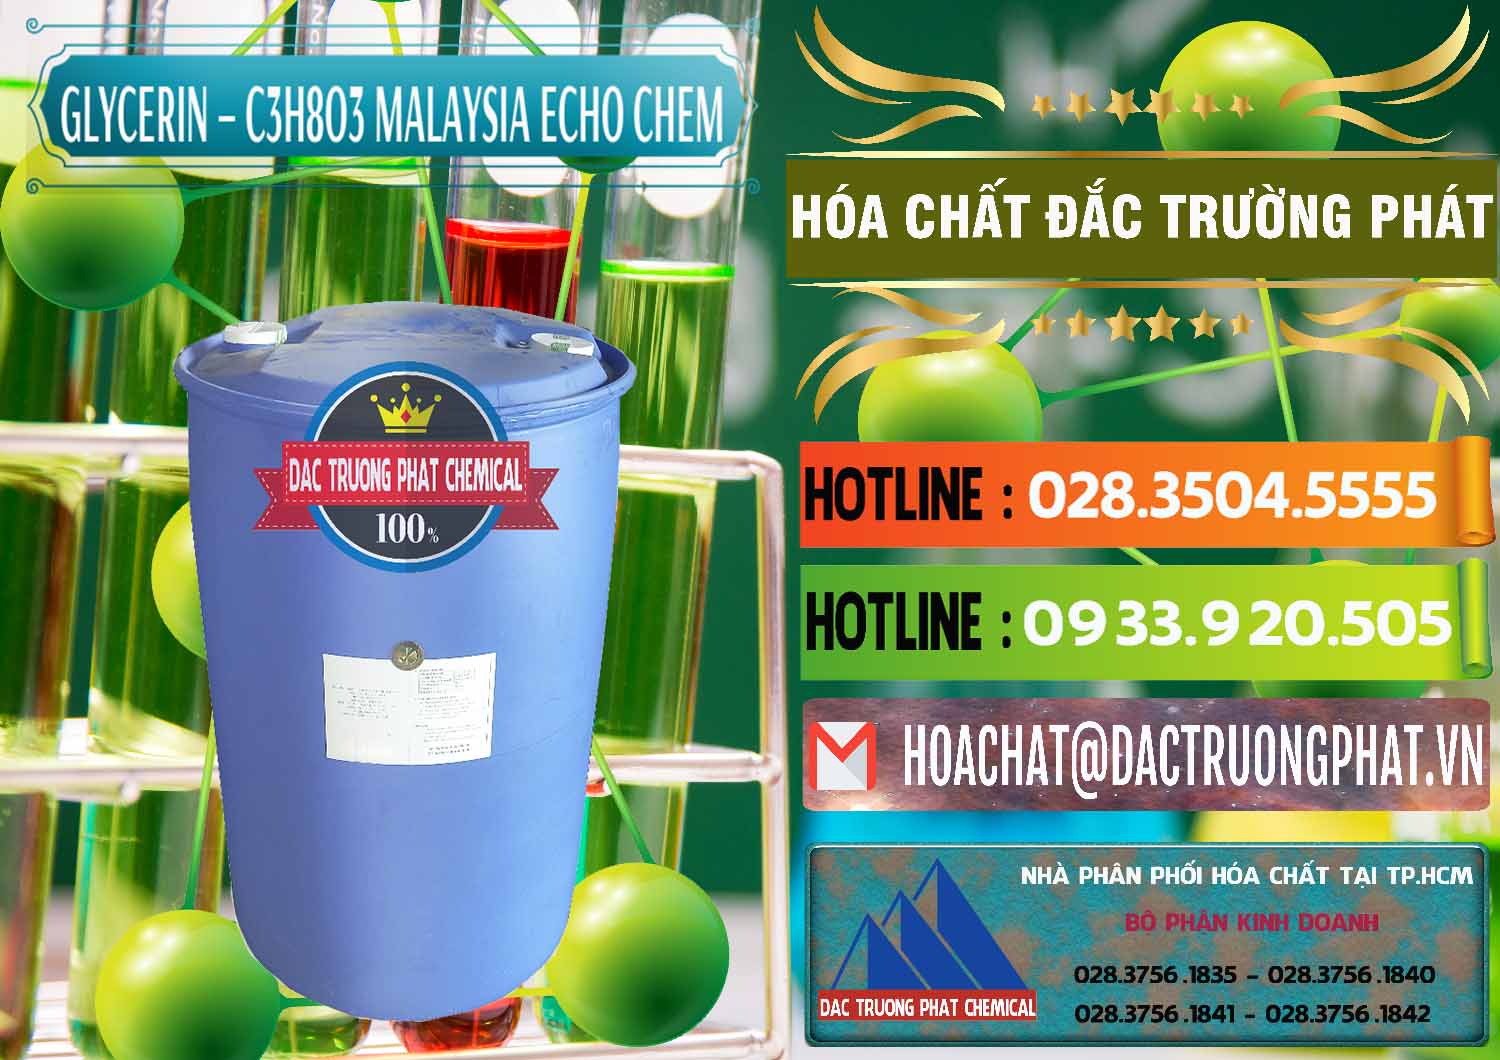 Chuyên bán - cung ứng Glycerin – C3H8O3 99.7% Echo Chem Malaysia - 0273 - Phân phối - kinh doanh hóa chất tại TP.HCM - cungcaphoachat.com.vn